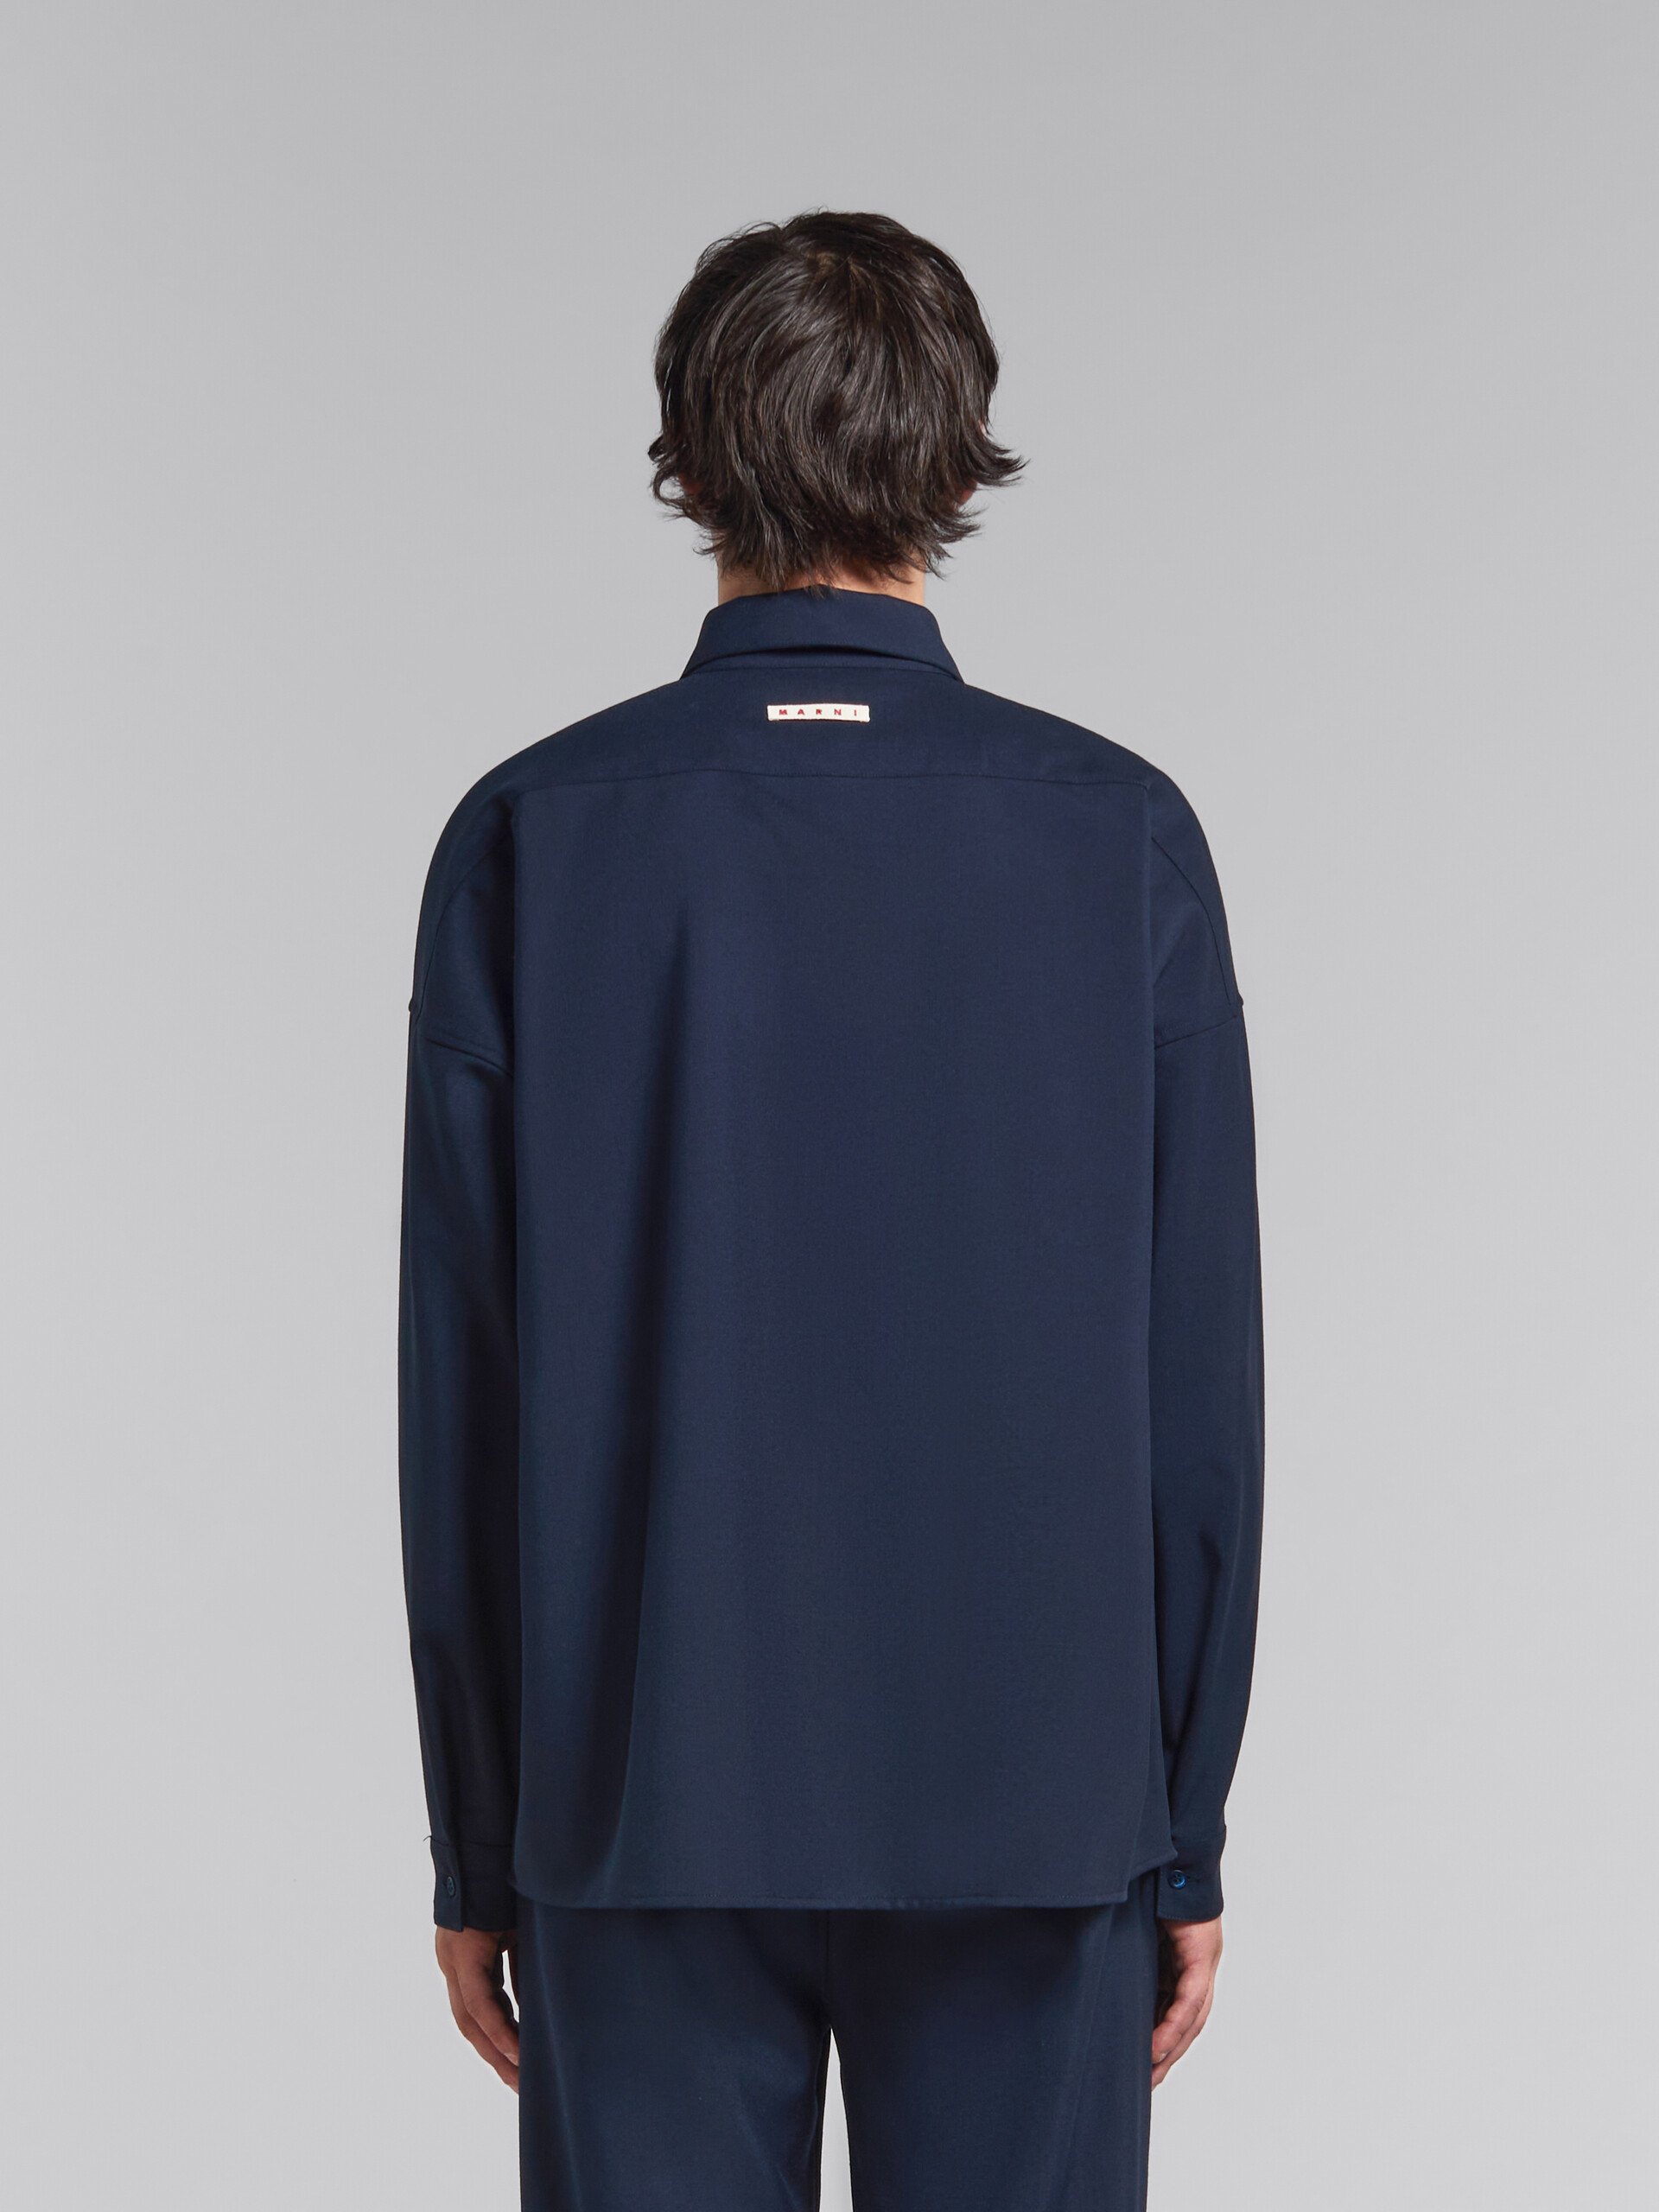 Camisa de lana tropical azul intenso con manga larga - Camisas - Image 3